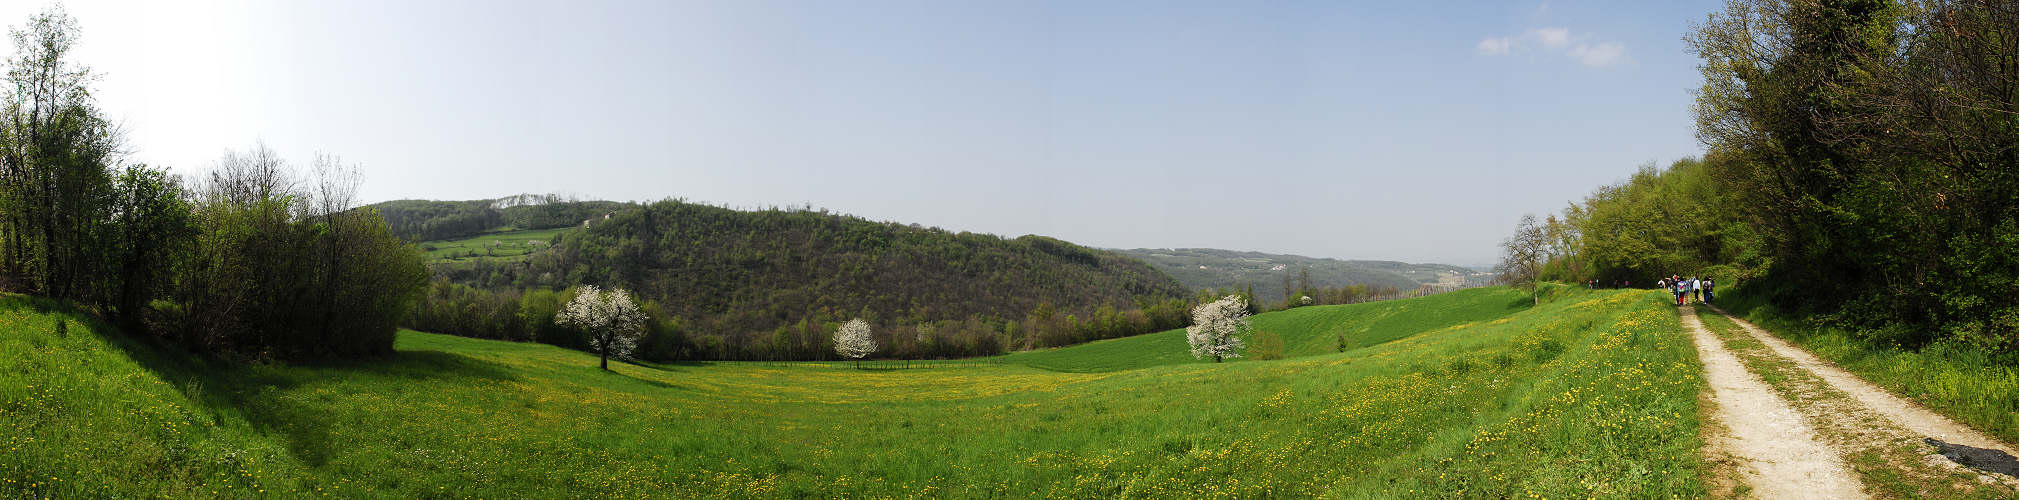 Villabalzana di Arcugnano, Monti Berici valle di Fimon, Vicenza